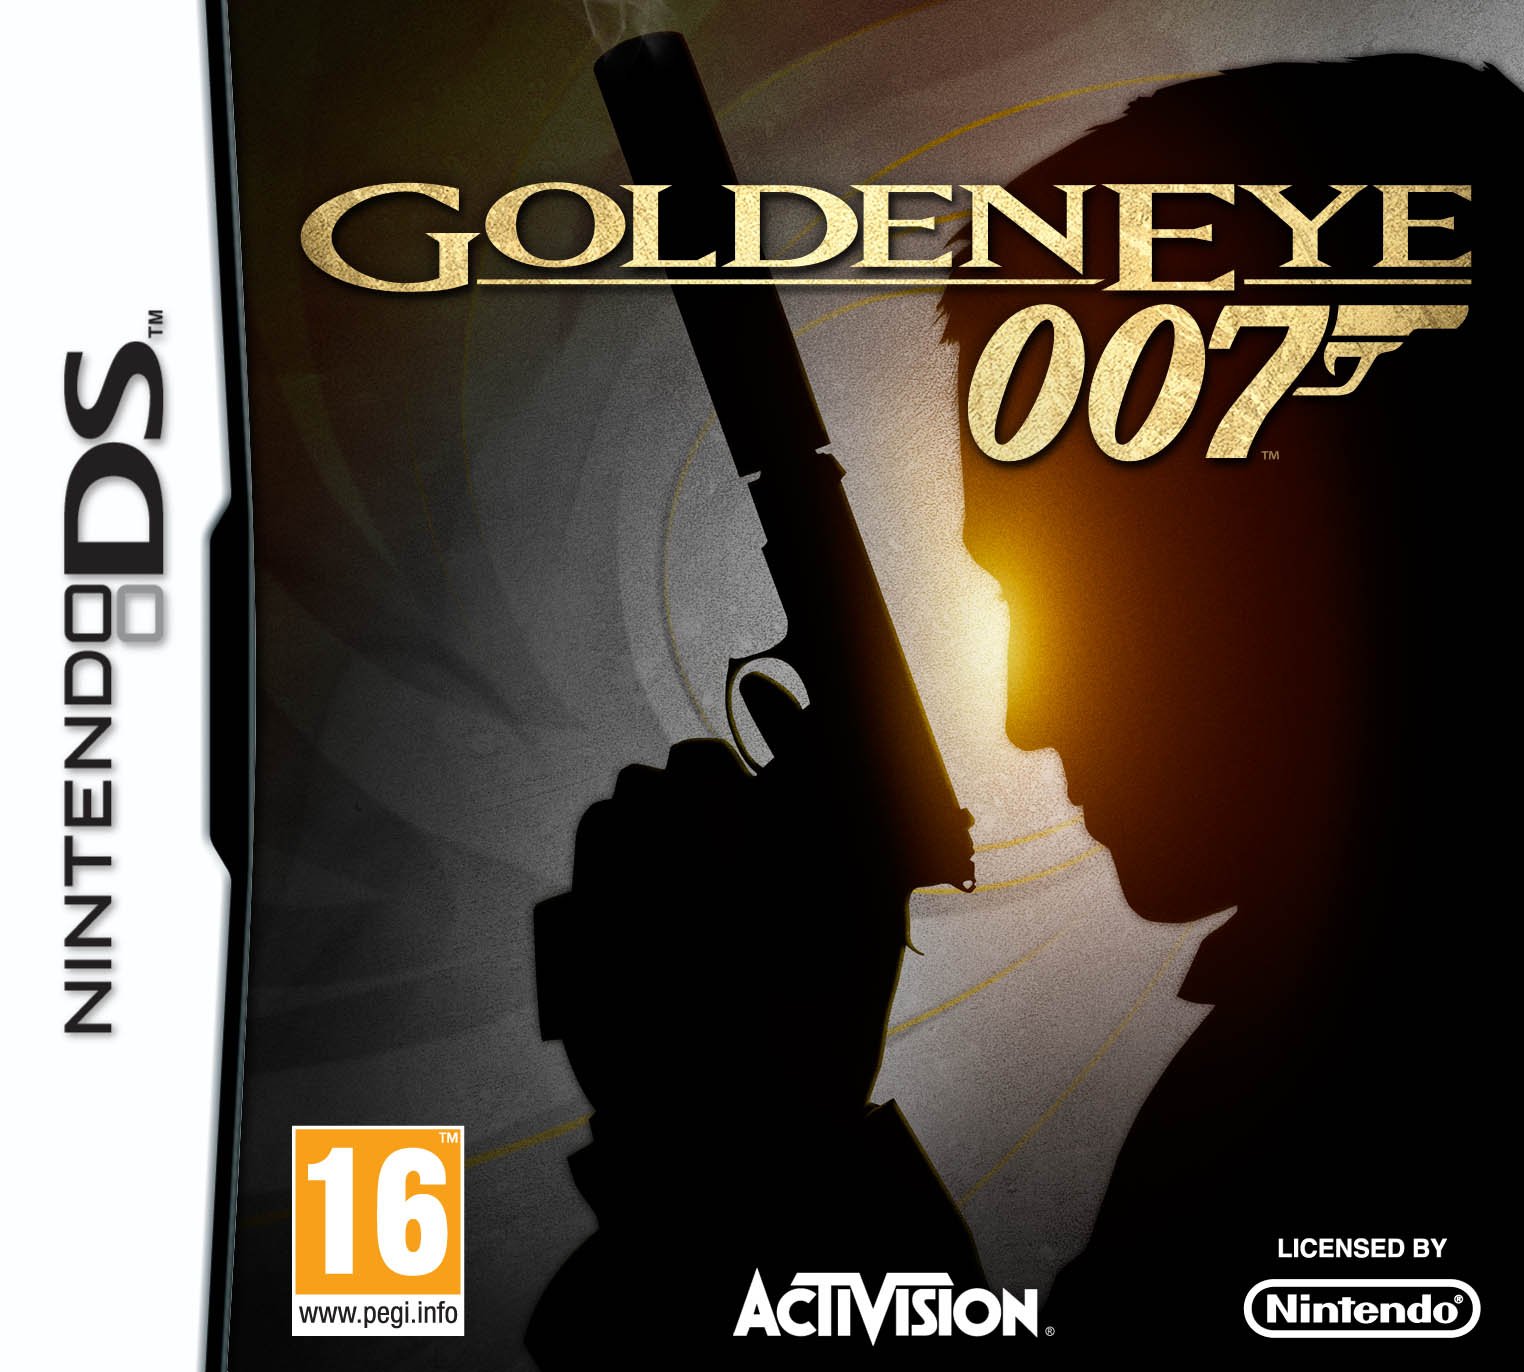 Goldeneye - Xbox 360 Port - Playlists & Playlist Media - LaunchBox